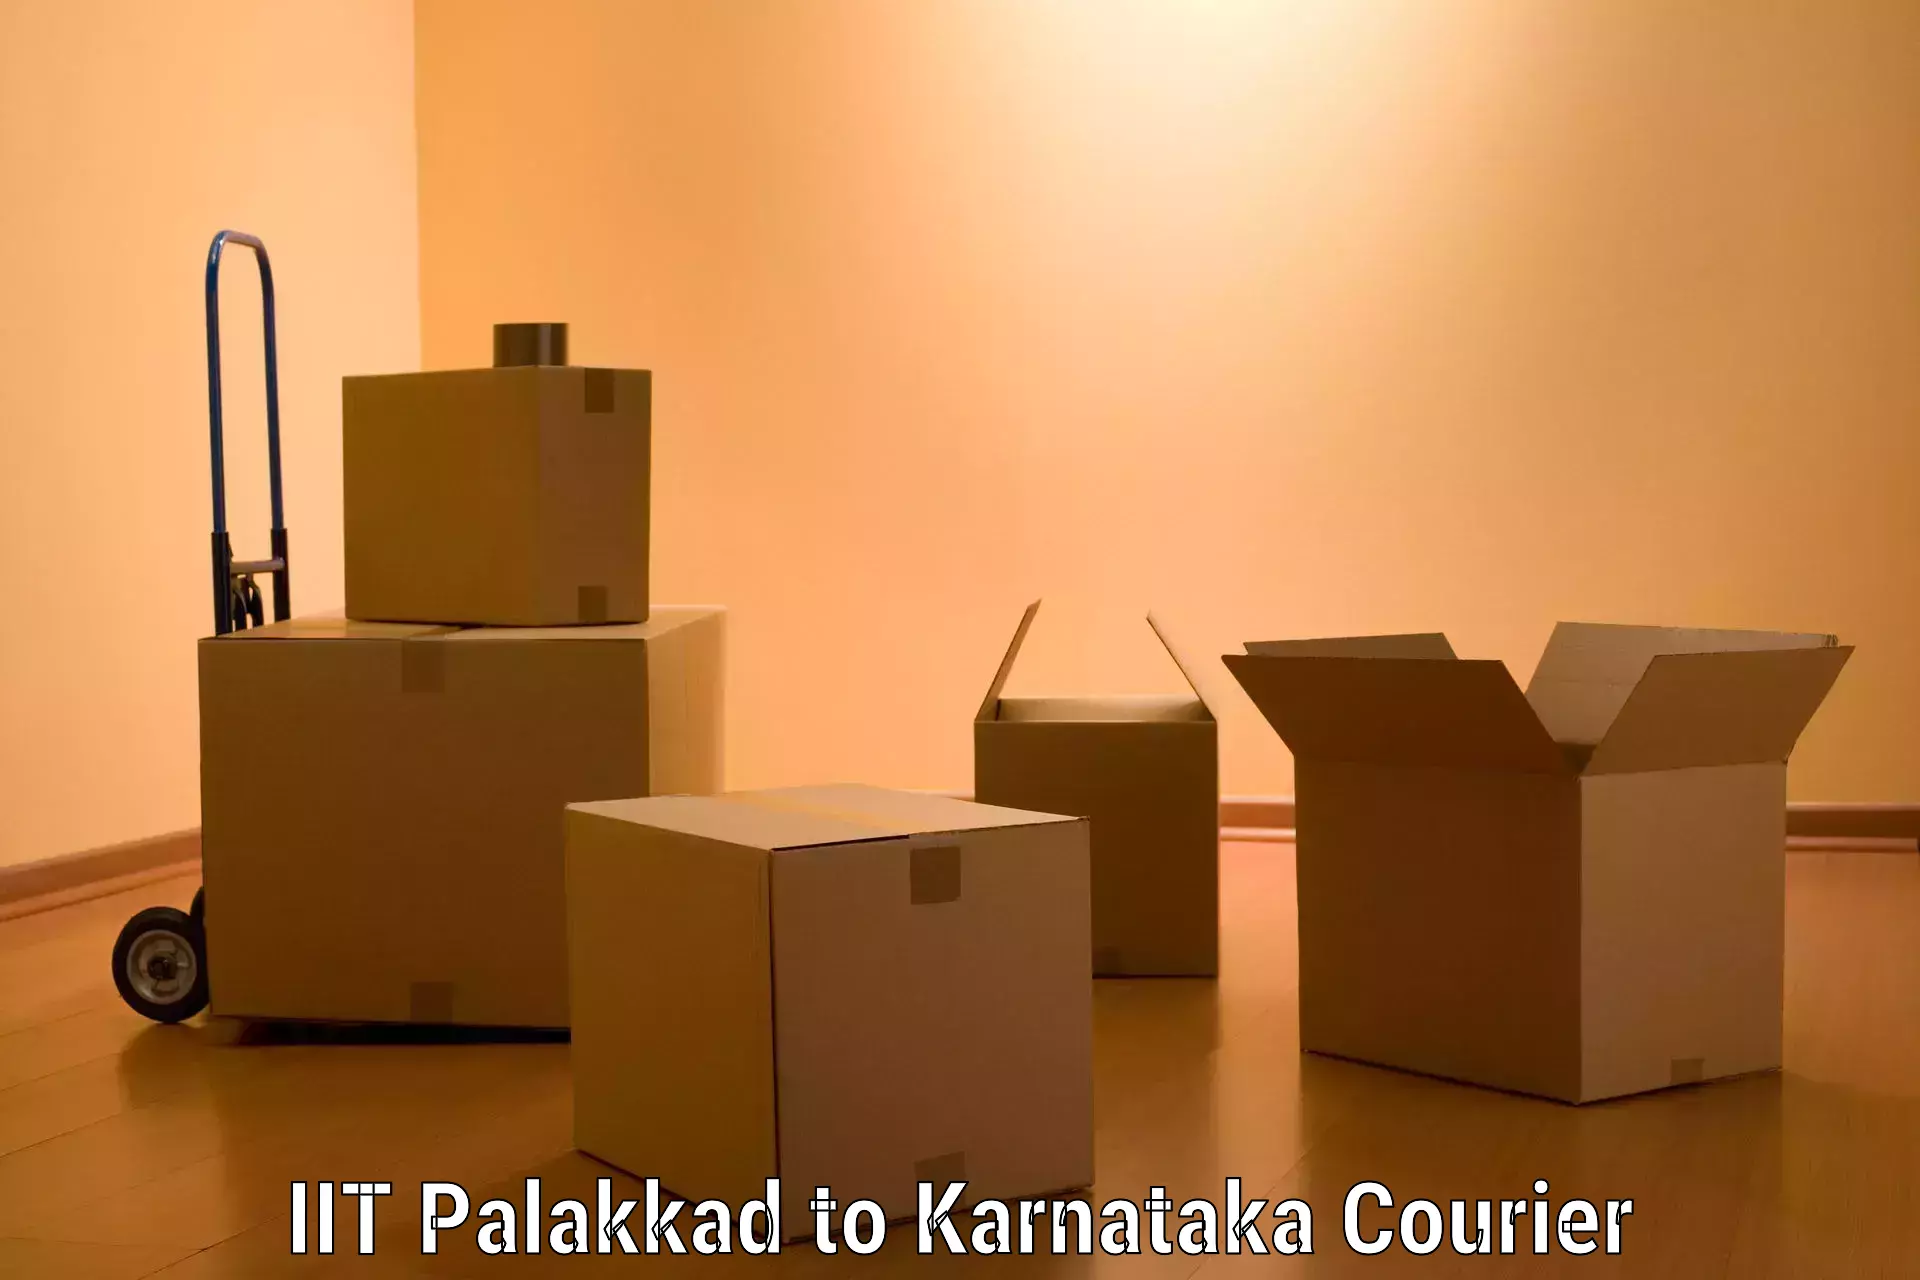 Furniture moving plans IIT Palakkad to Karnataka